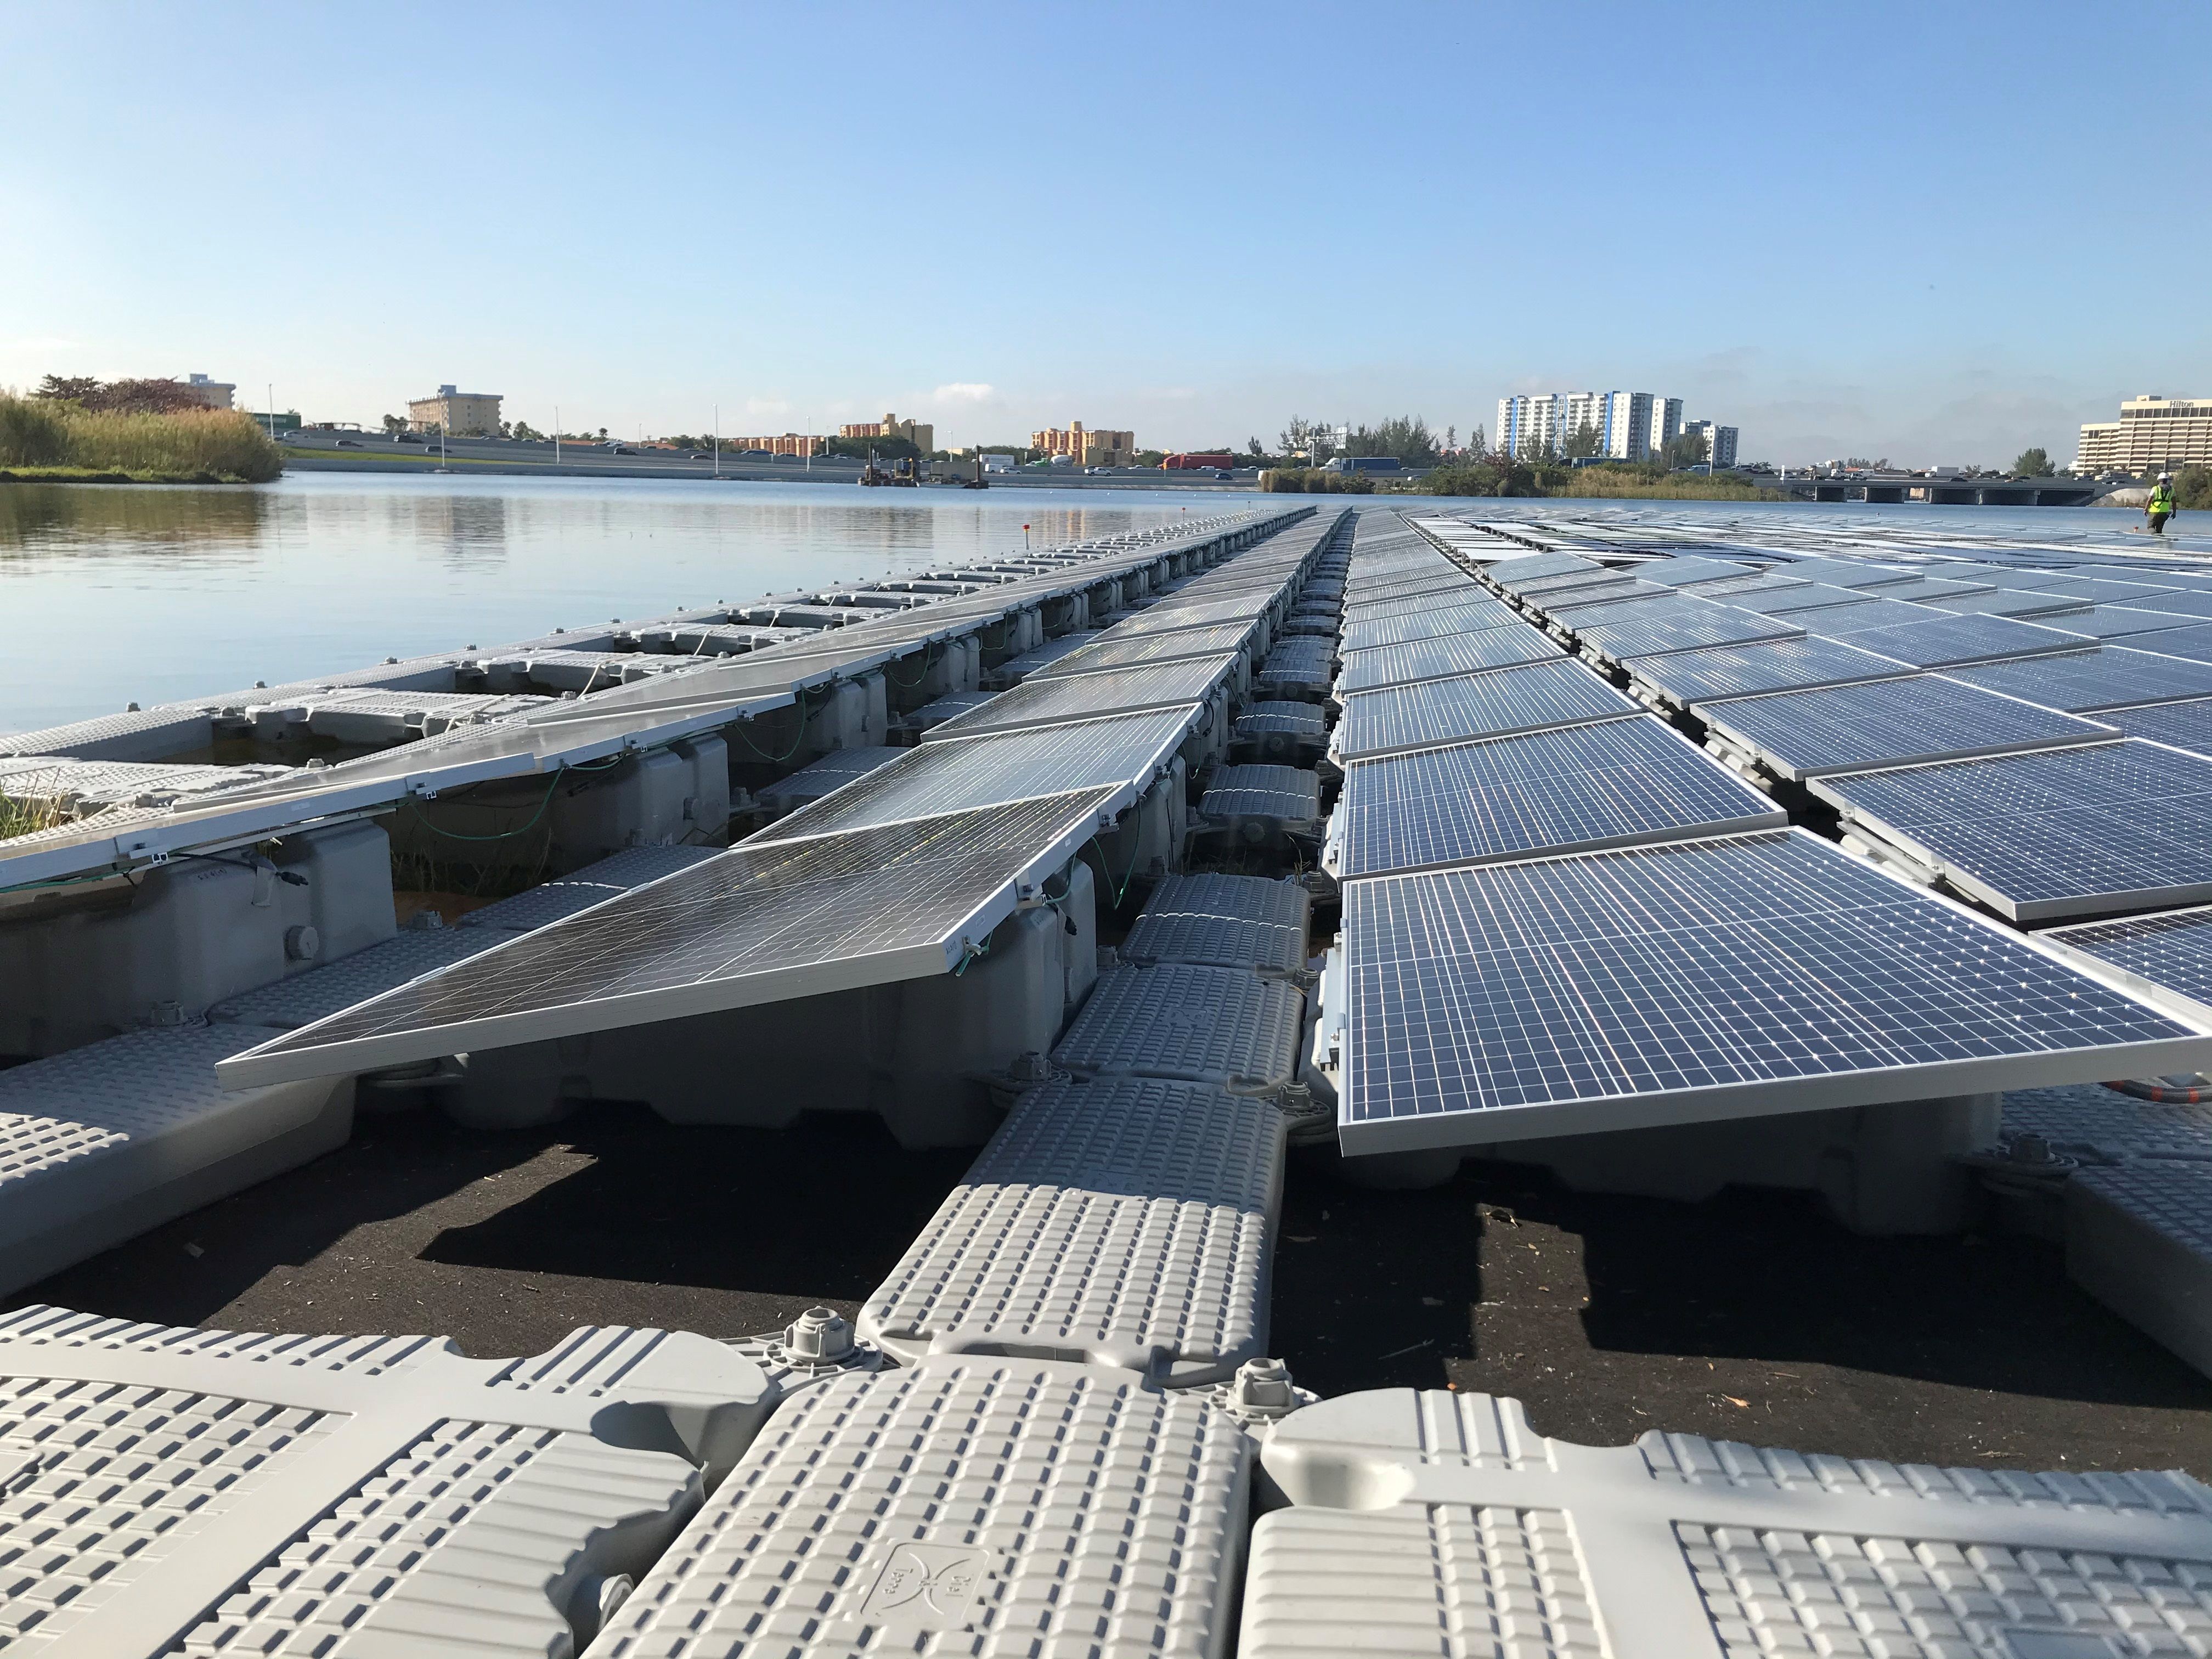 Inauguran en un lago de Miami una plataforma flotante de energía solar